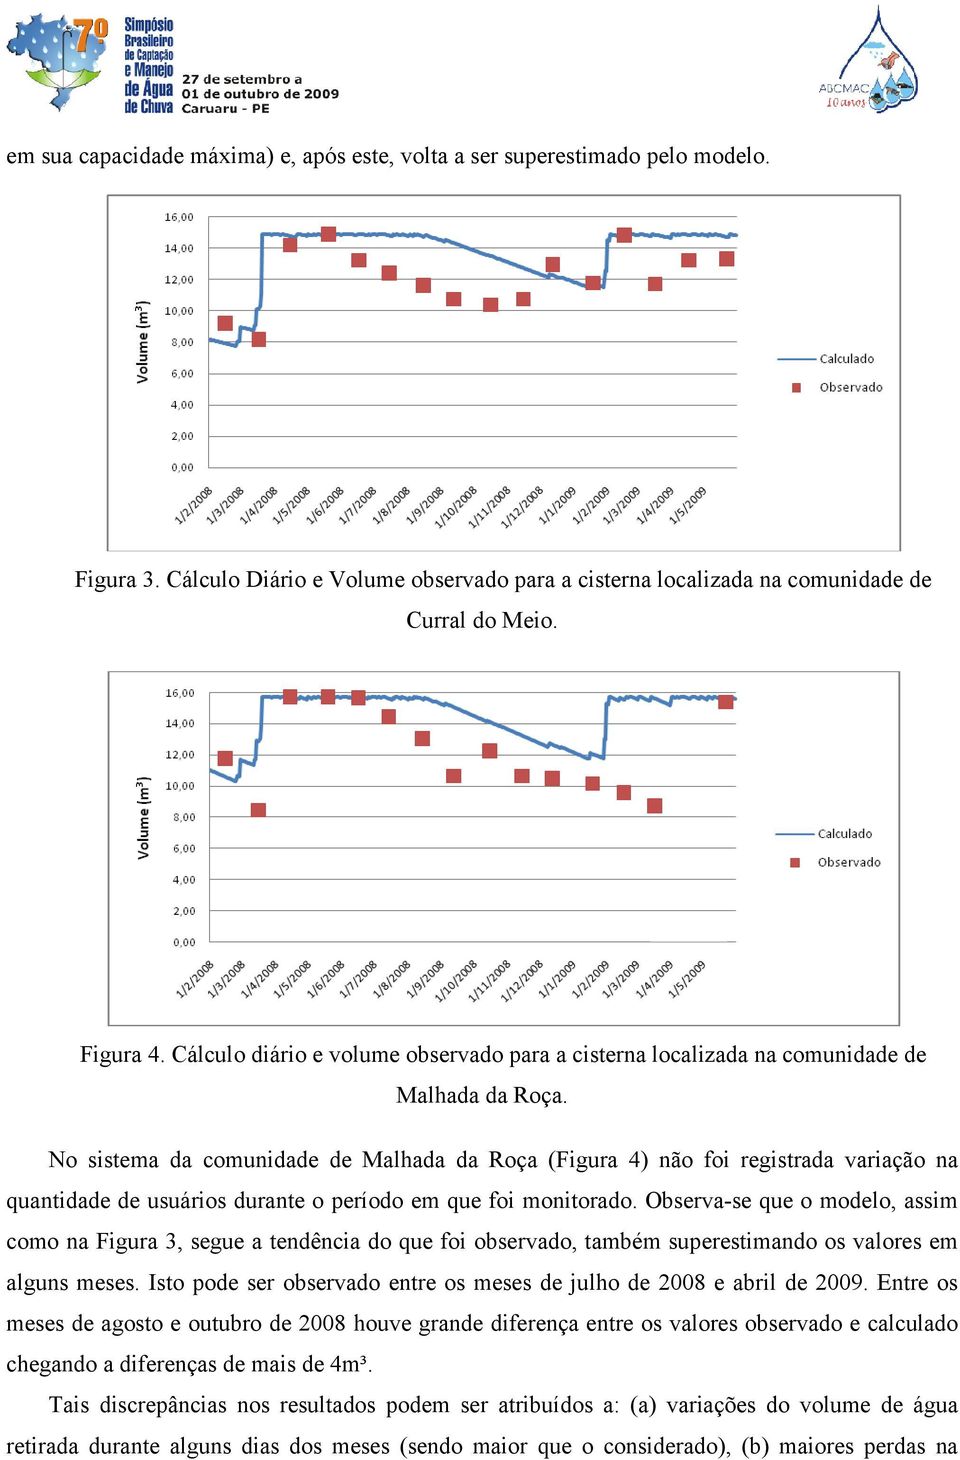 No sistema da comunidade de Malhada da Roça (Figura 4) não foi registrada variação na quantidade de usuários durante o período em que foi monitorado.